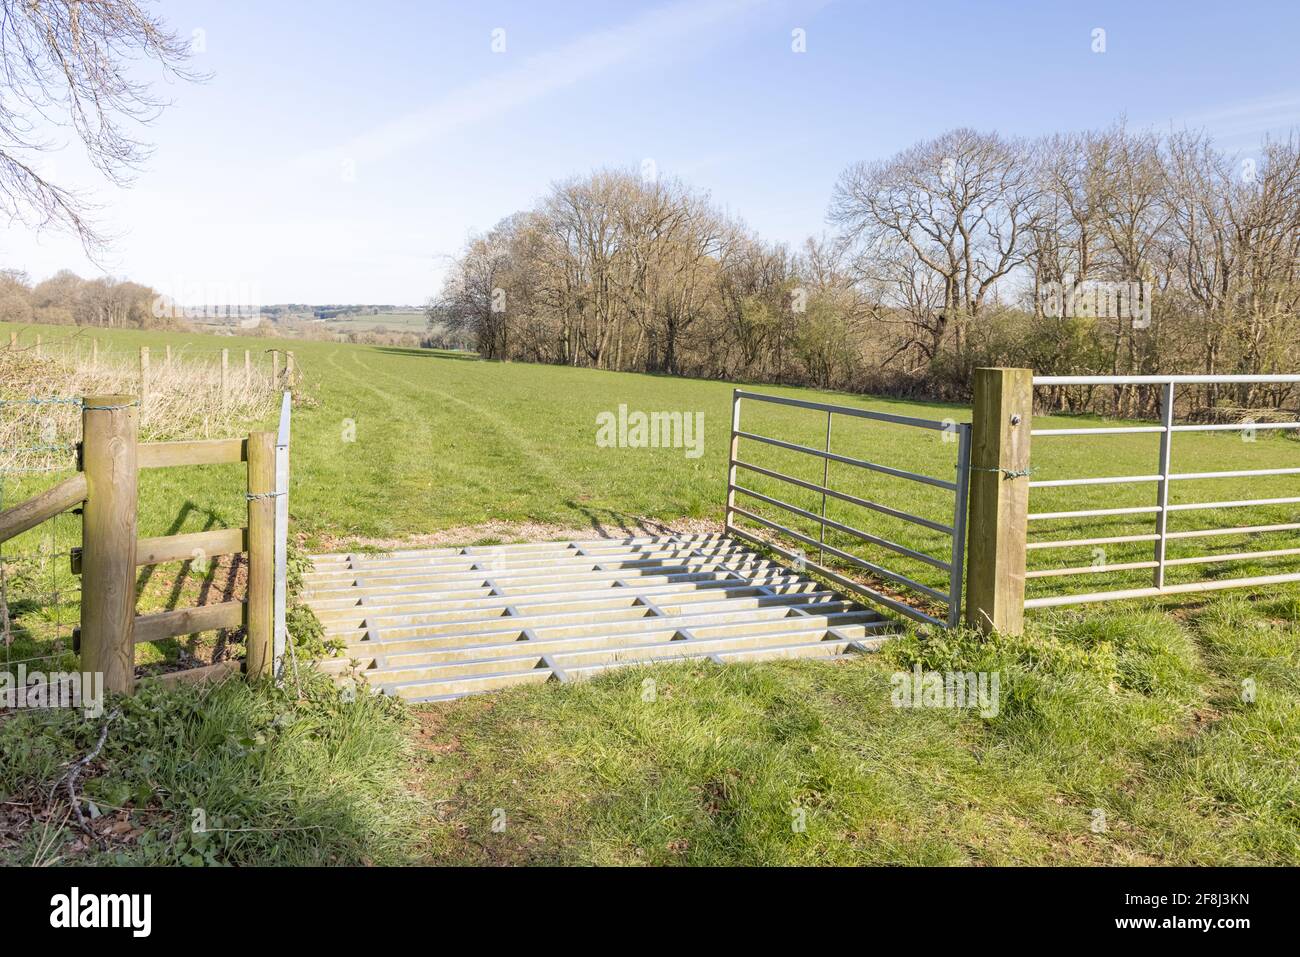 Badby, Northamptonshire, Royaume-Uni - 13 avril 2021 : une grille métallique de bétail à l'entrée d'un champ de pâturage avec des traces dans l'herbe. Banque D'Images